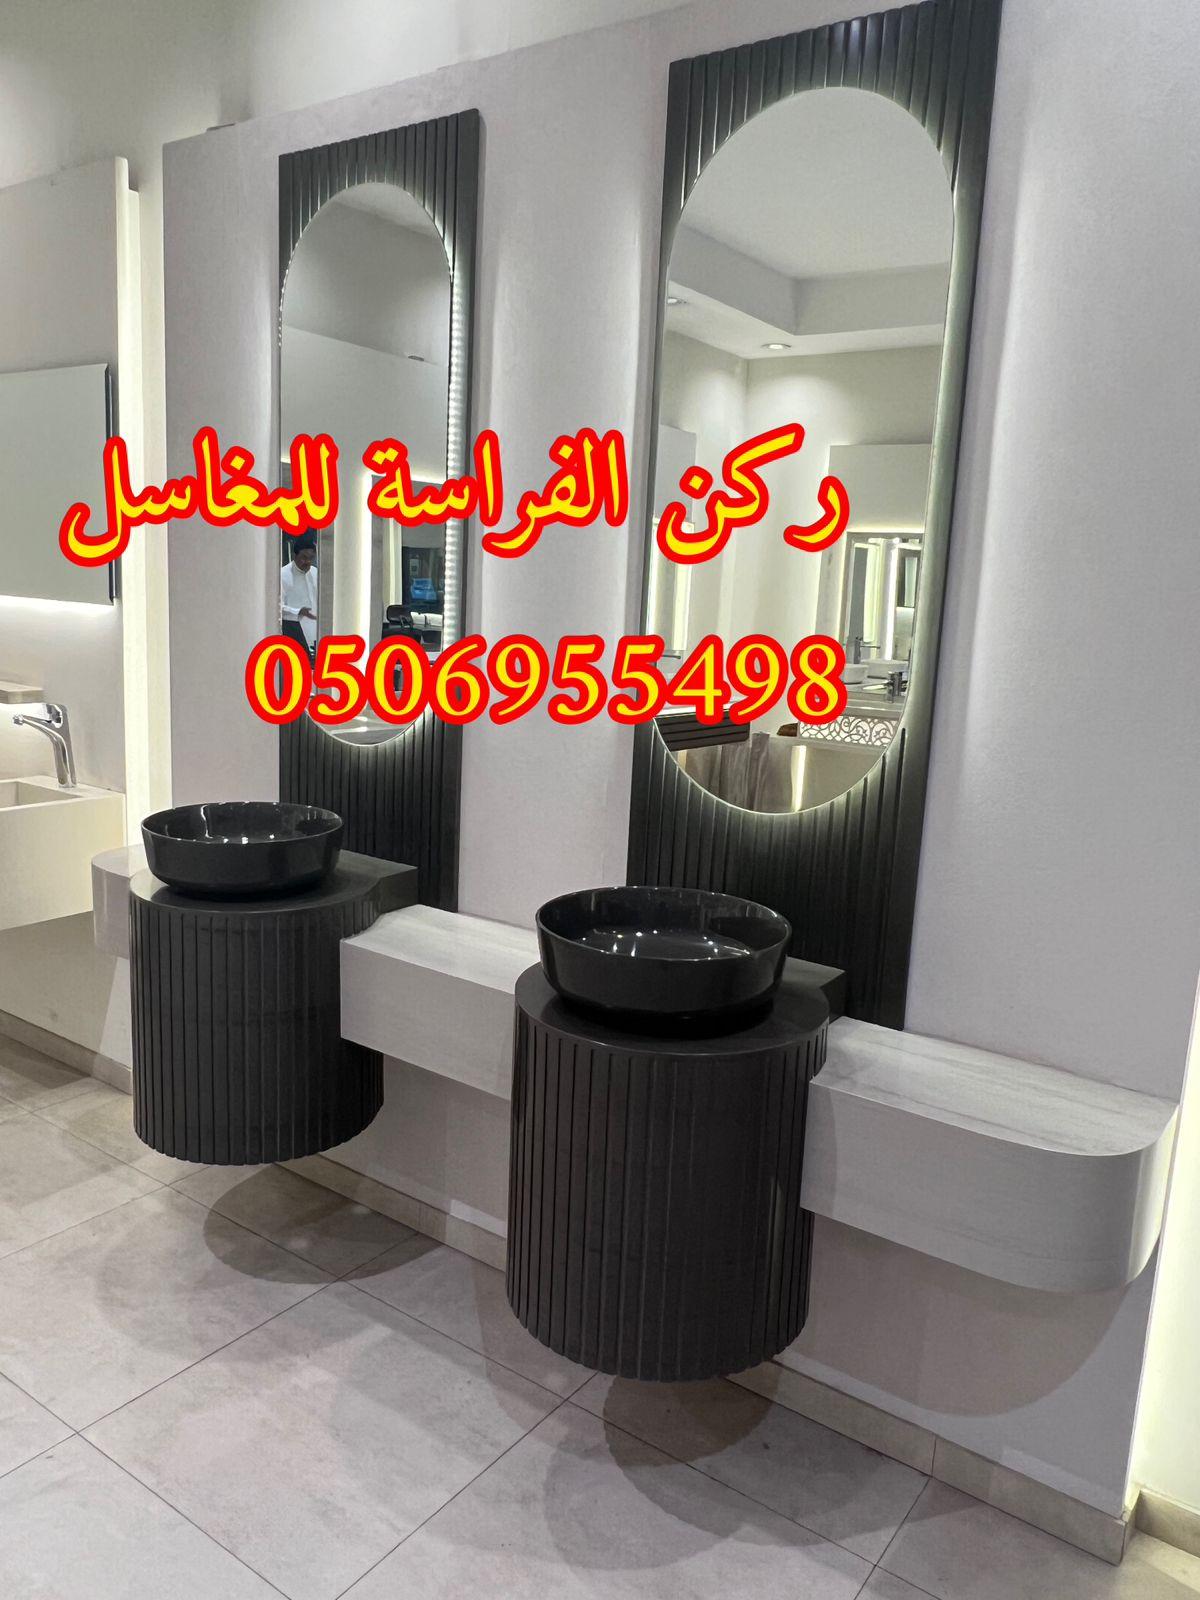 الرياض - ديكورات مغاسل حمامات رخام في الرياض,0506955498 746755363